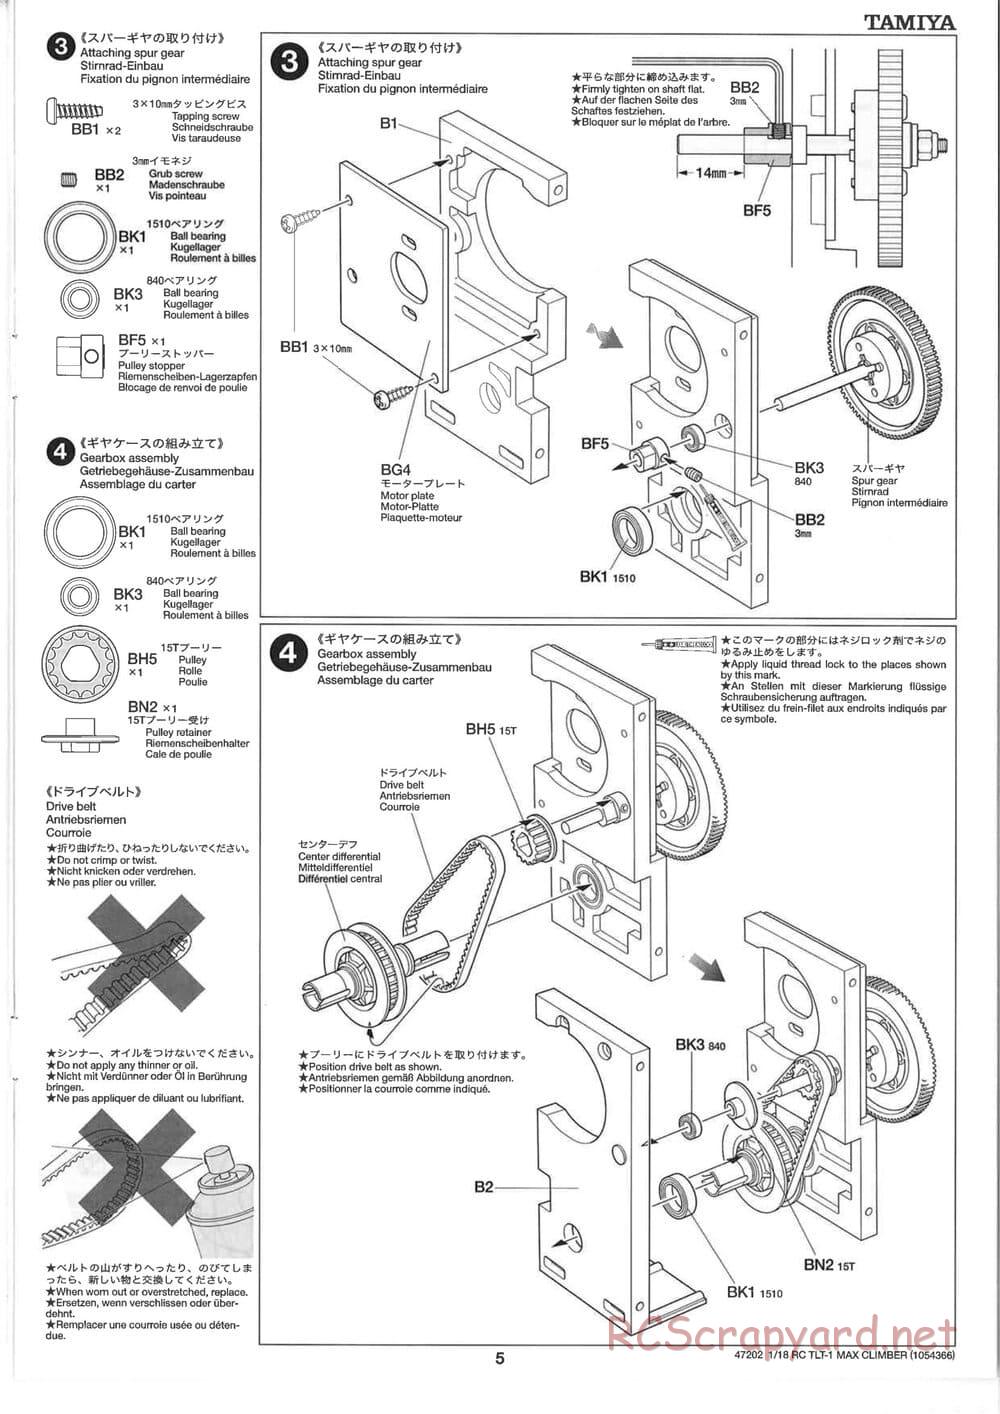 Tamiya - Max Climber - TLT-1 Chassis - Manual - Page 5